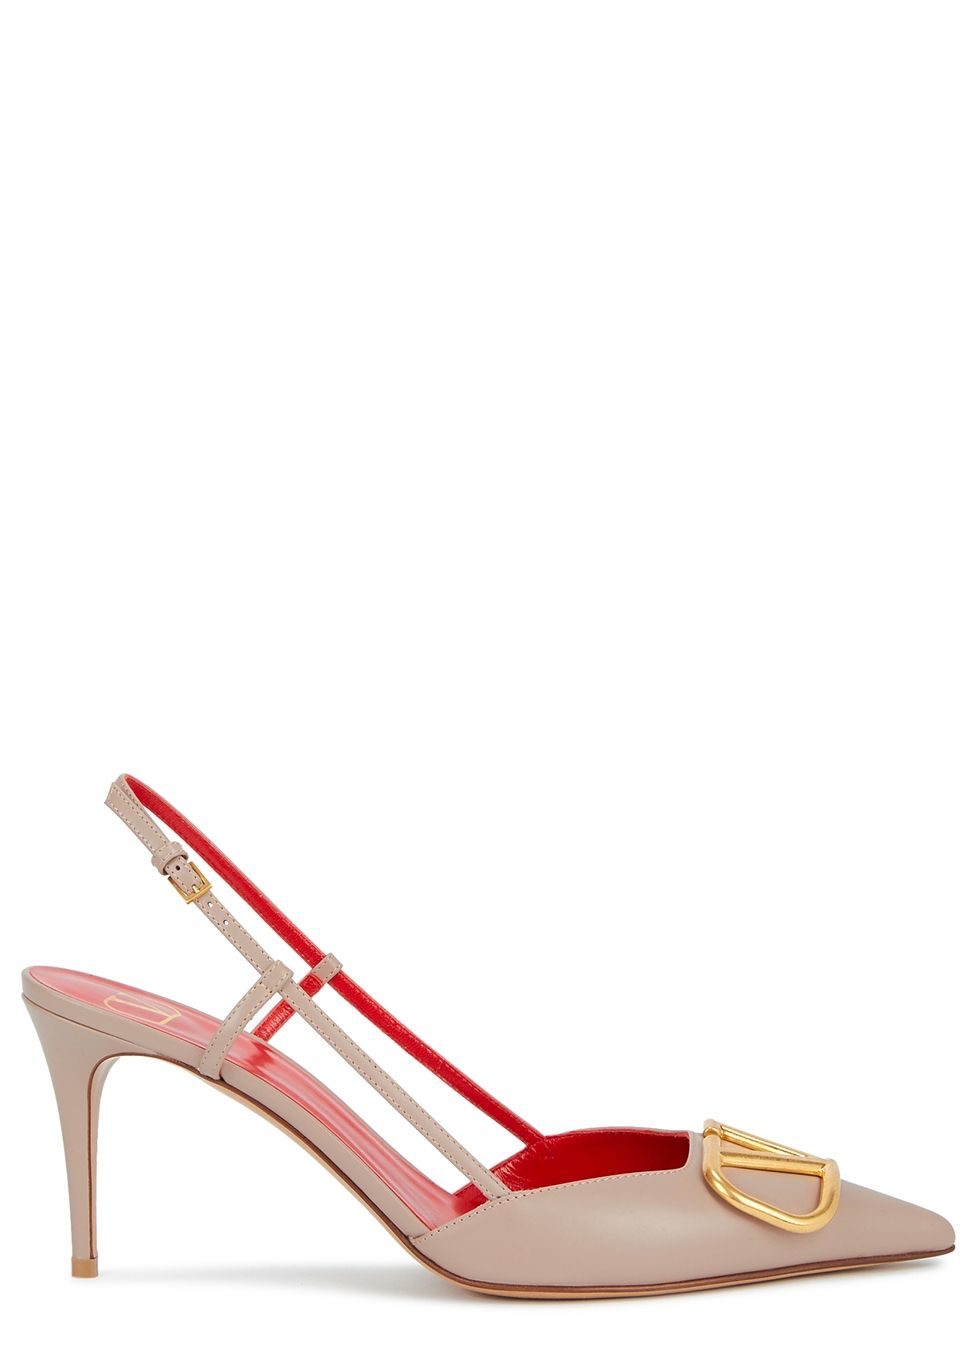 rose gold designer heels